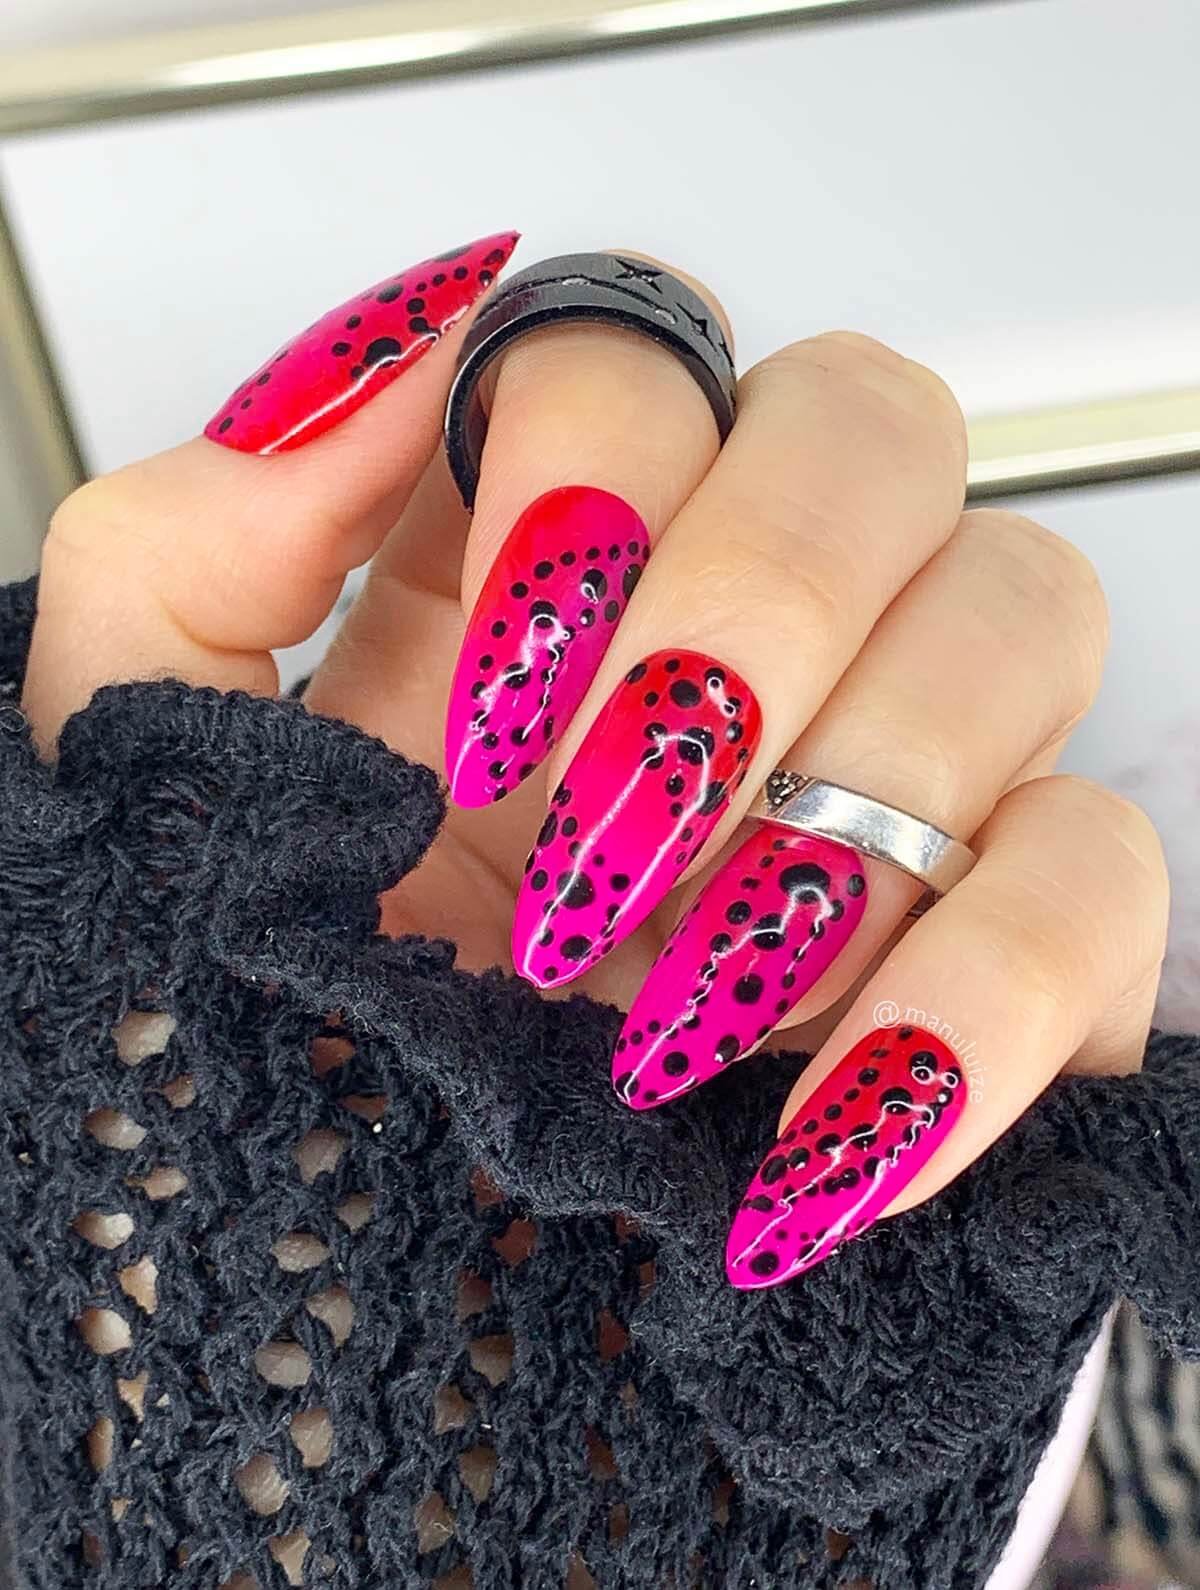 Red and pink polka dots nail art